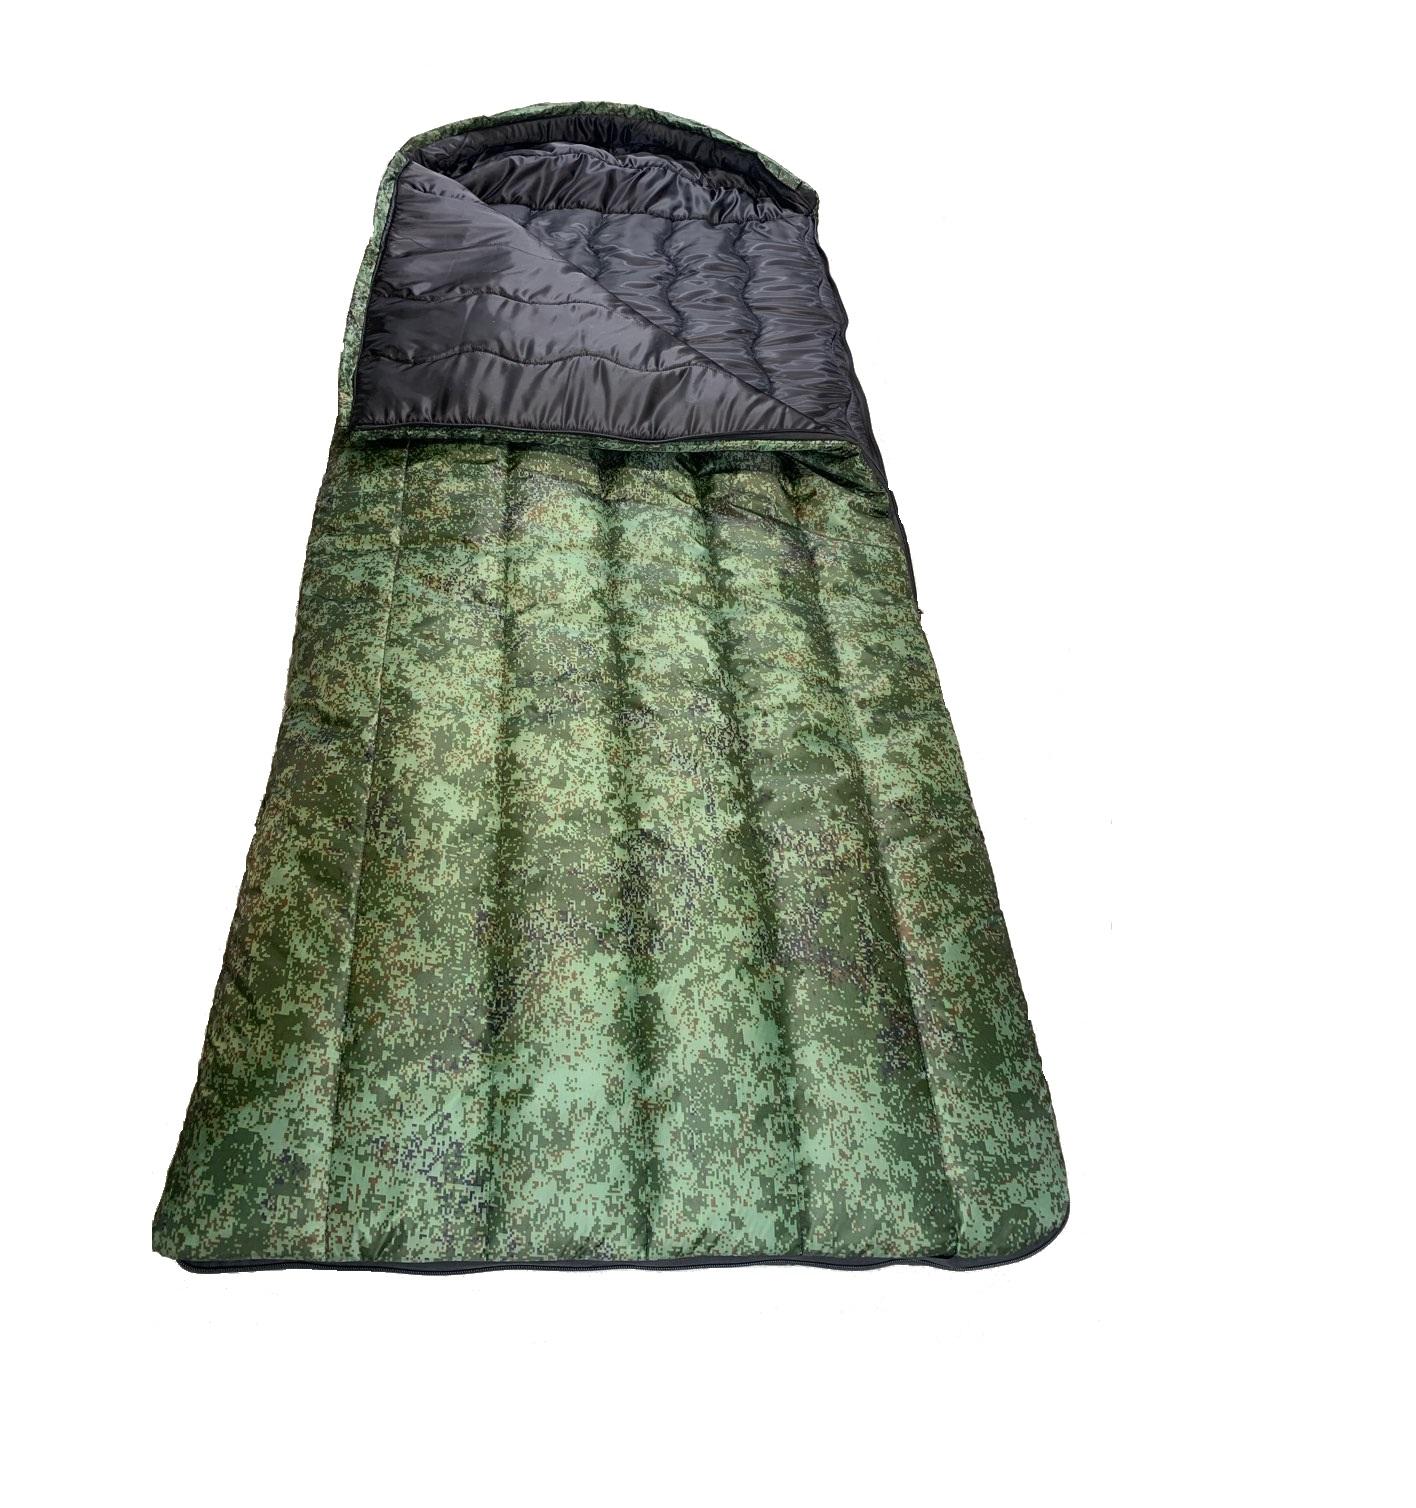 Улучшенный теплый зимний спальный мешок размером 220x70 утепленный синтепоном плотностью 200г/м2.. Можно использовать в качестве неуставного армейского спальника.